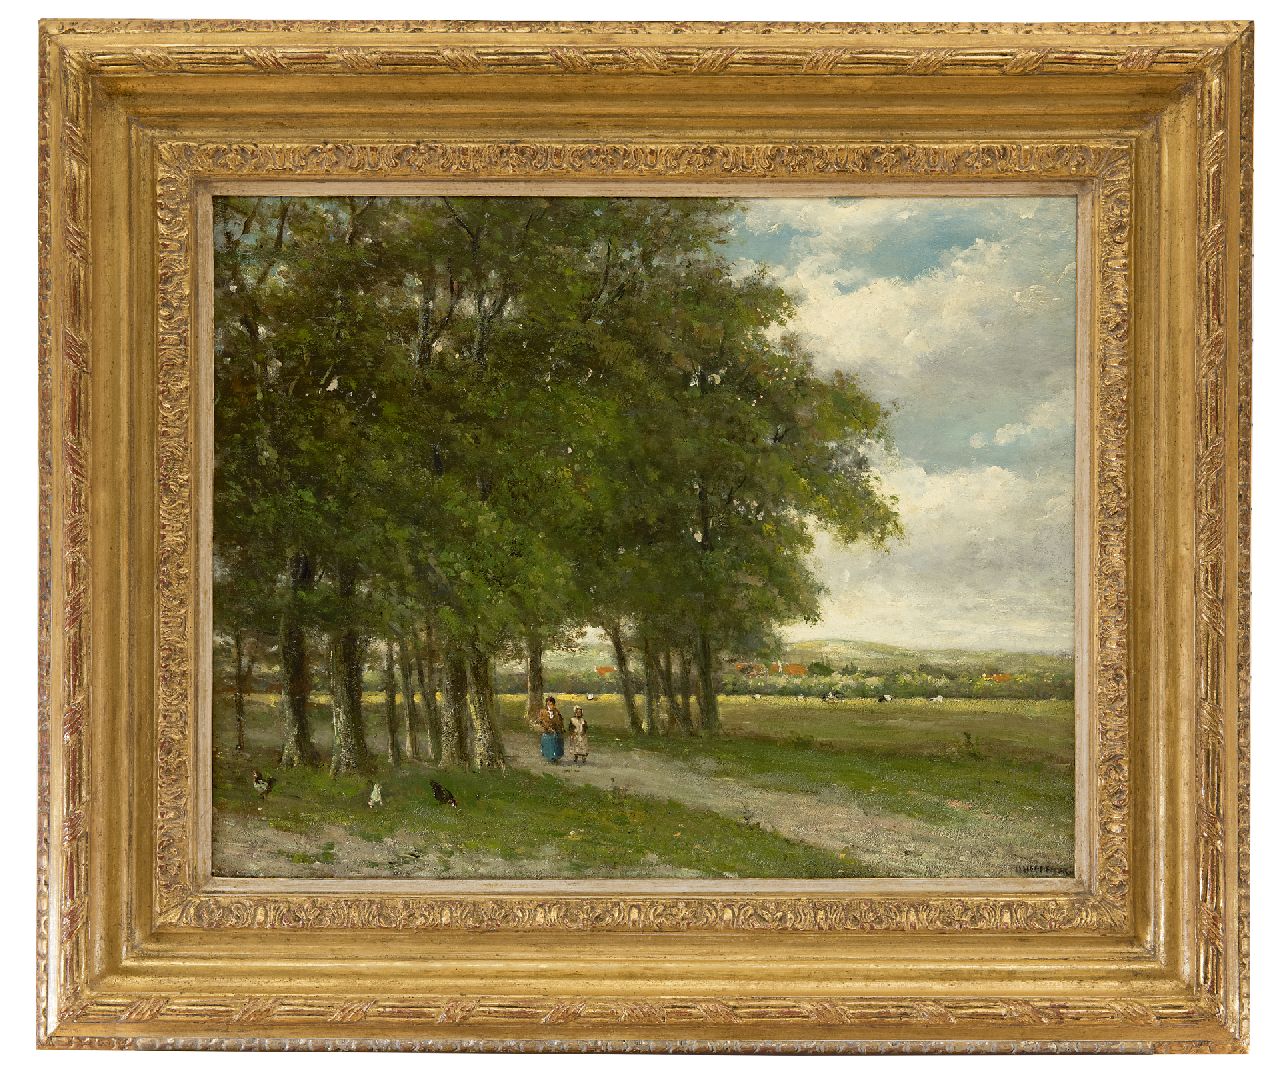 Heppener J.J.  | Johannes Jacobus 'Jan' Heppener | Paintings offered for sale | Homeward bound, oil on panel 40.8 x 52.2 cm, signed l.r.